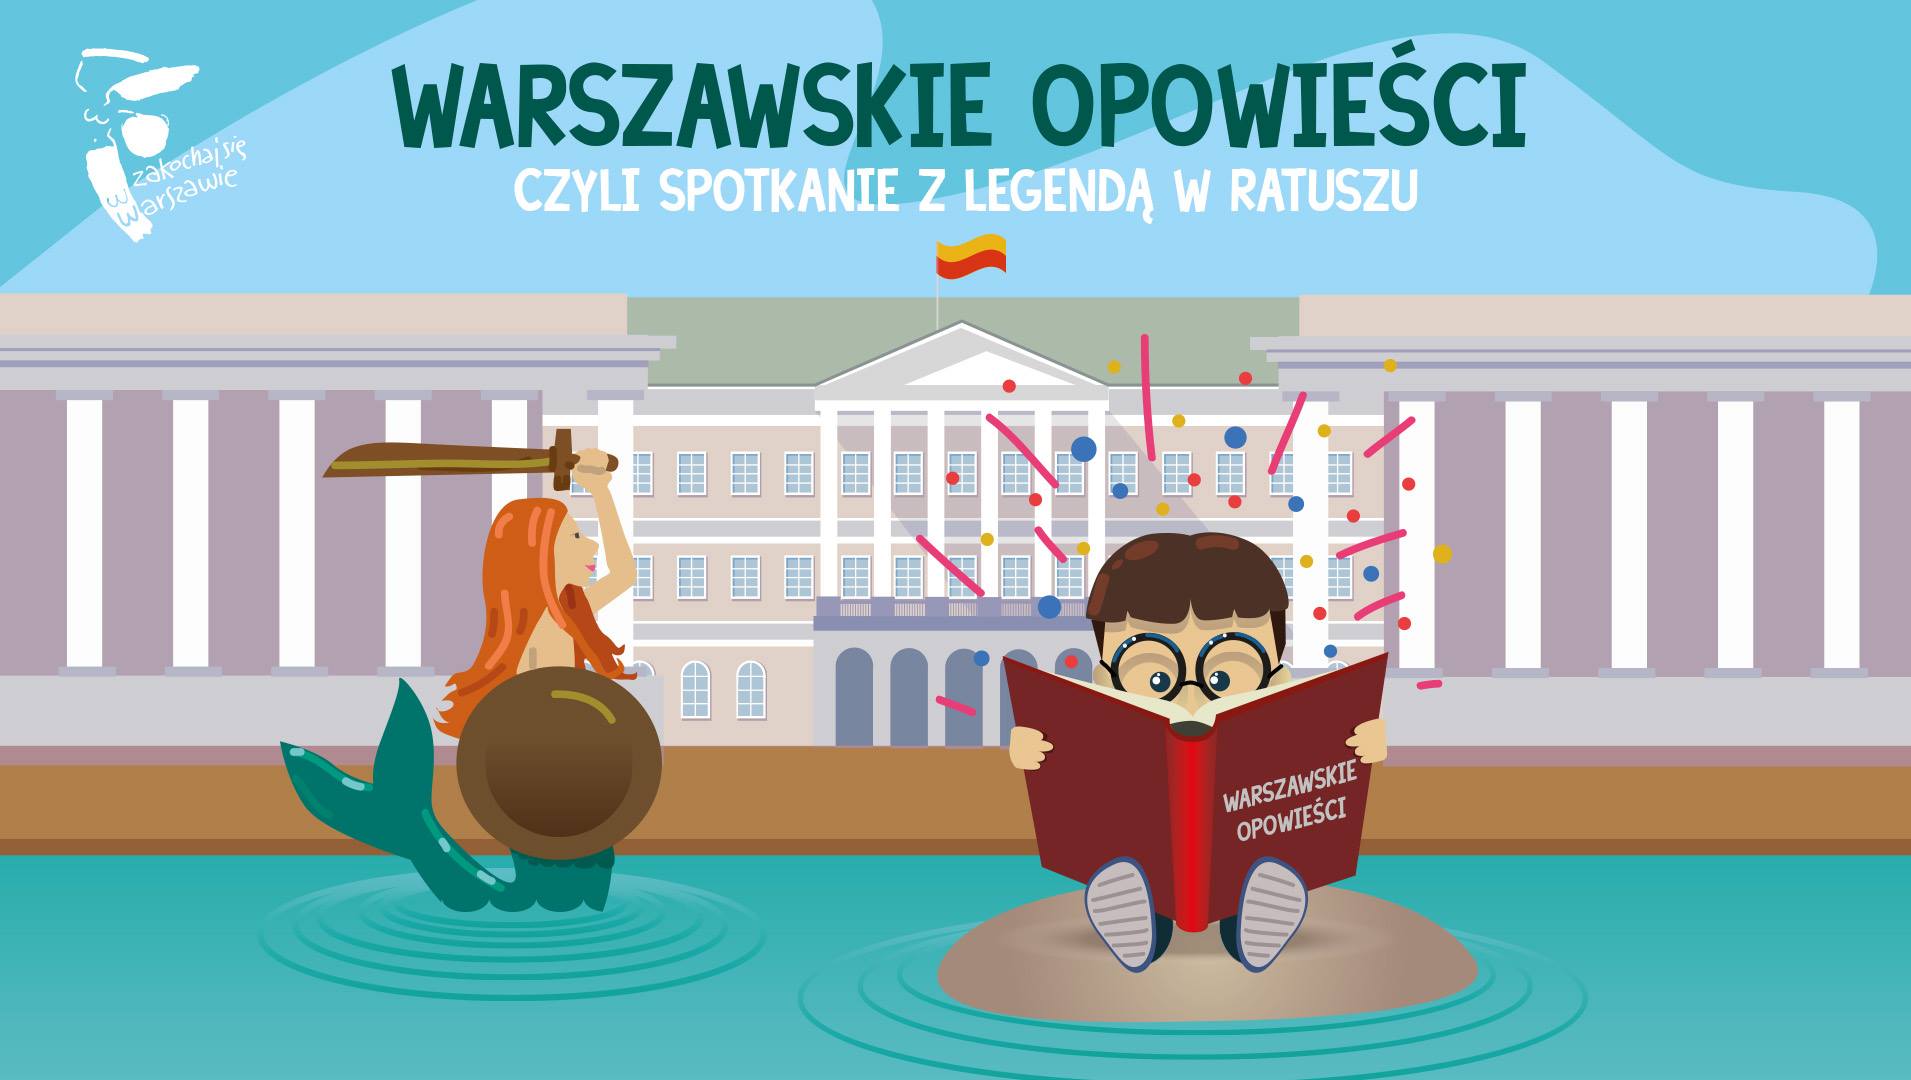 Warszawskie opowieści, czyli spotkanie z legendą w Ratuszu - darmowe atrakcje dla dzieci